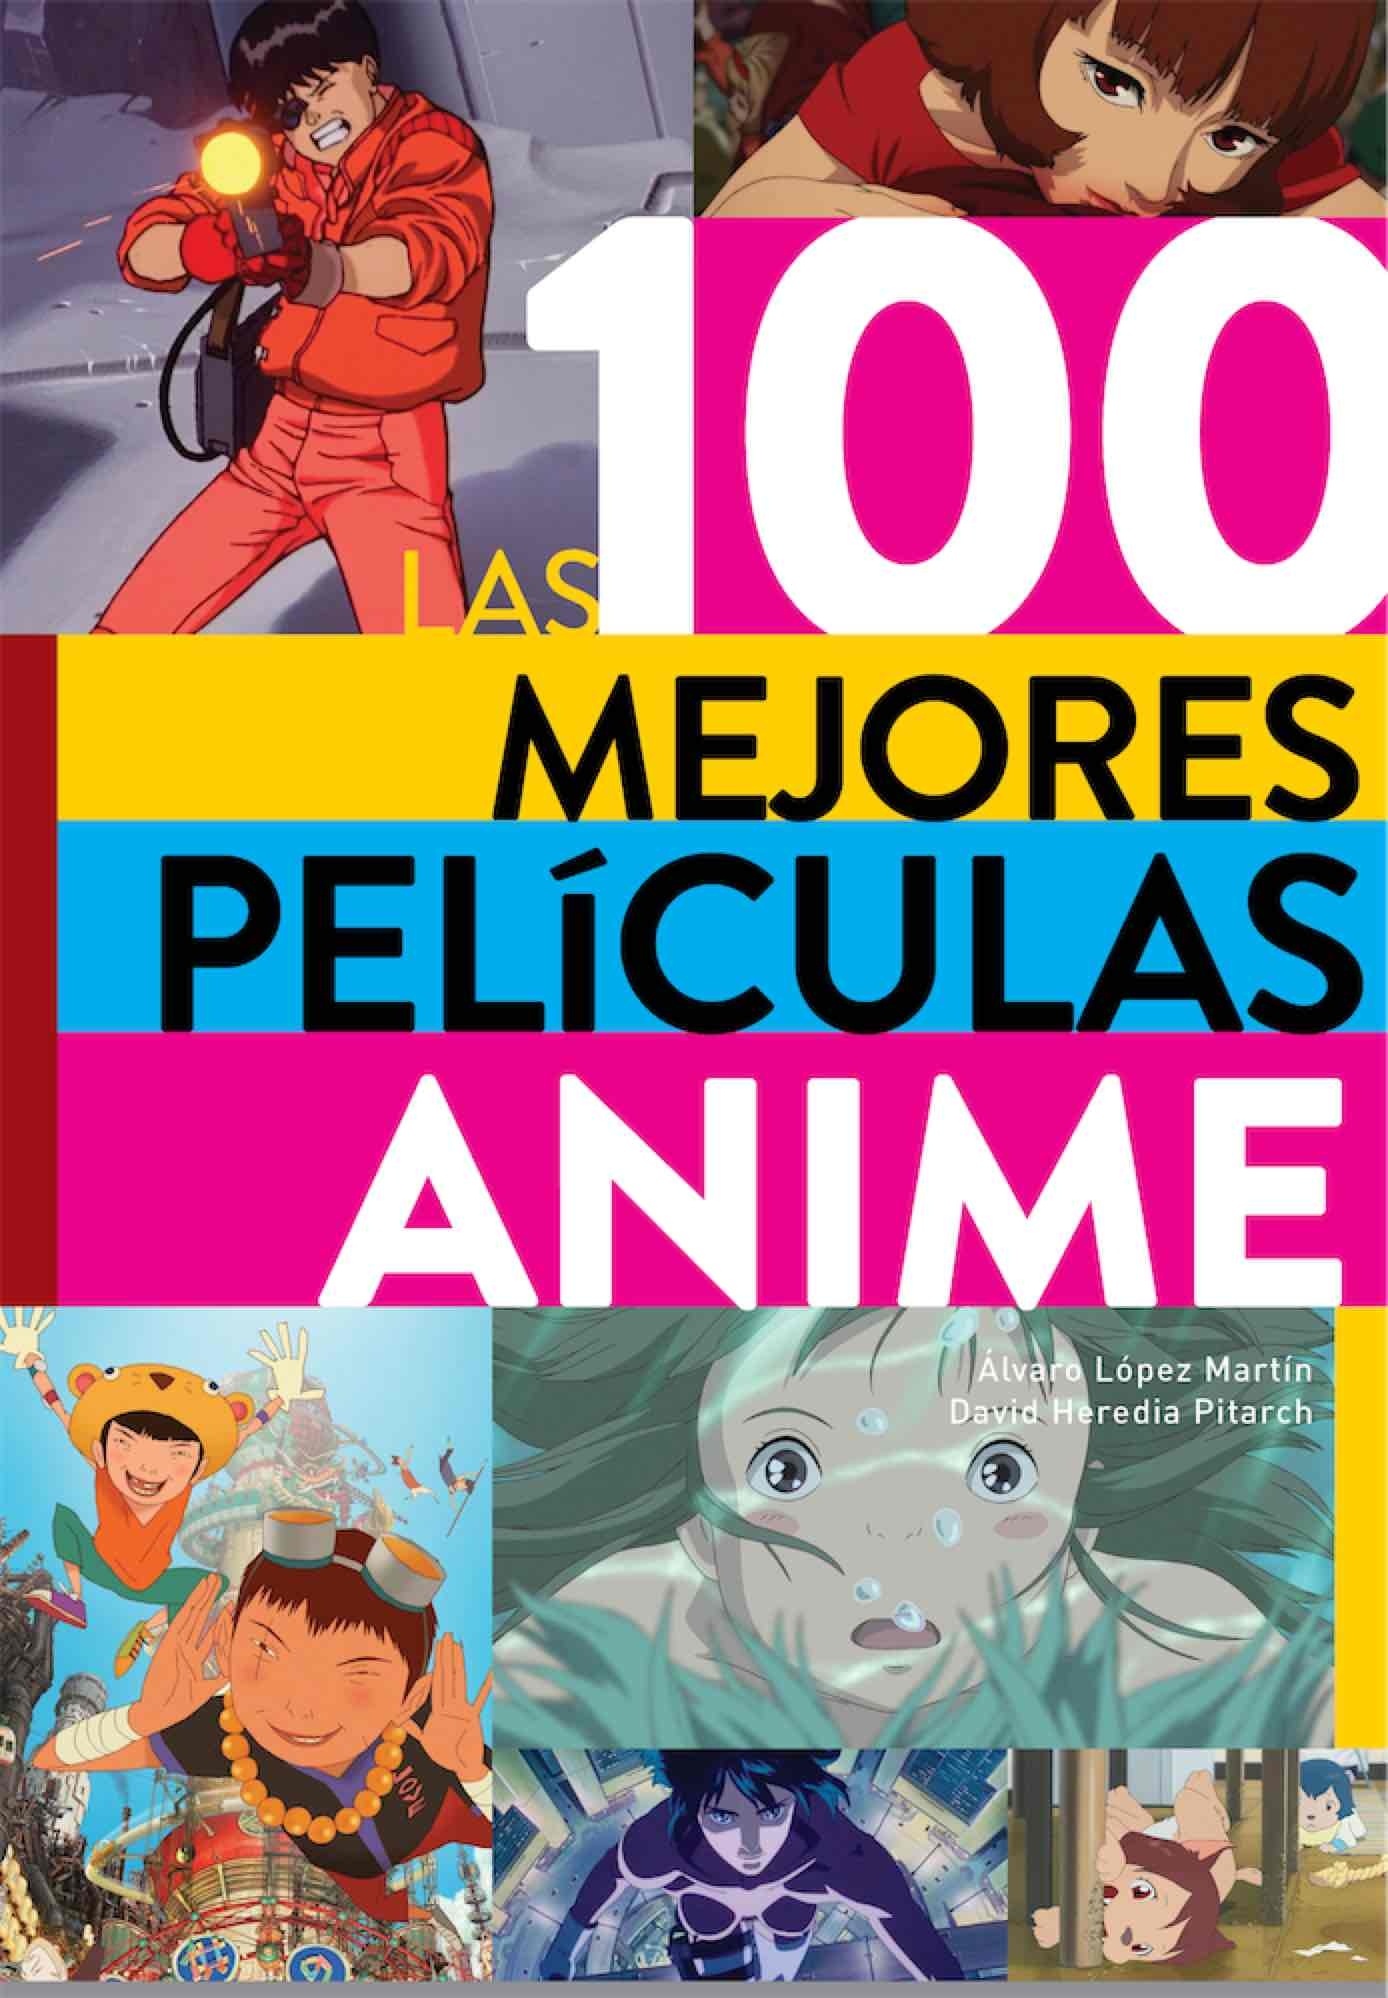 100 mejores películas anime, Las. 